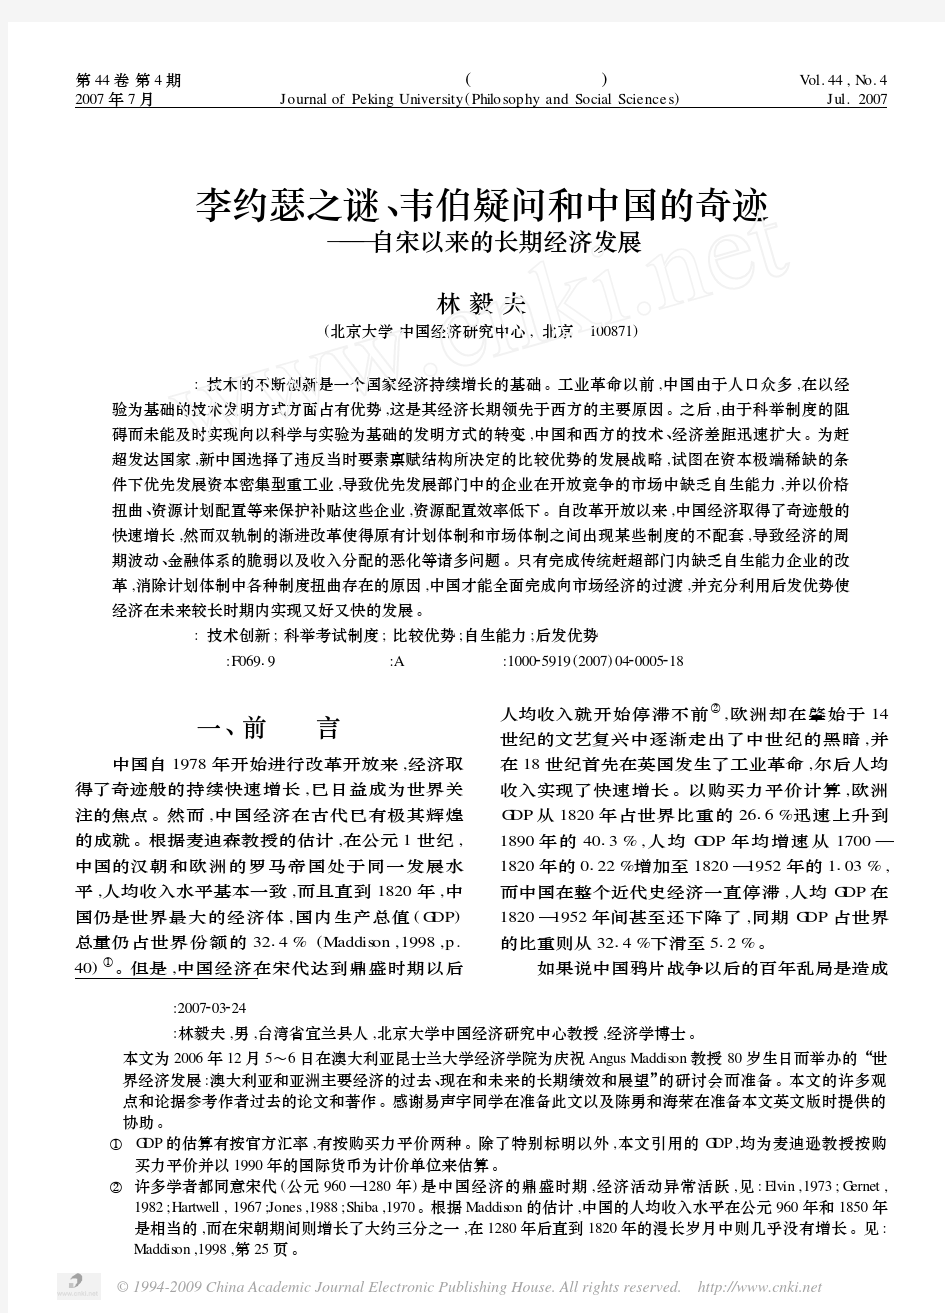 林毅夫：李约瑟之谜、韦伯疑问和中国的奇迹-自宋以来的长期经济发展